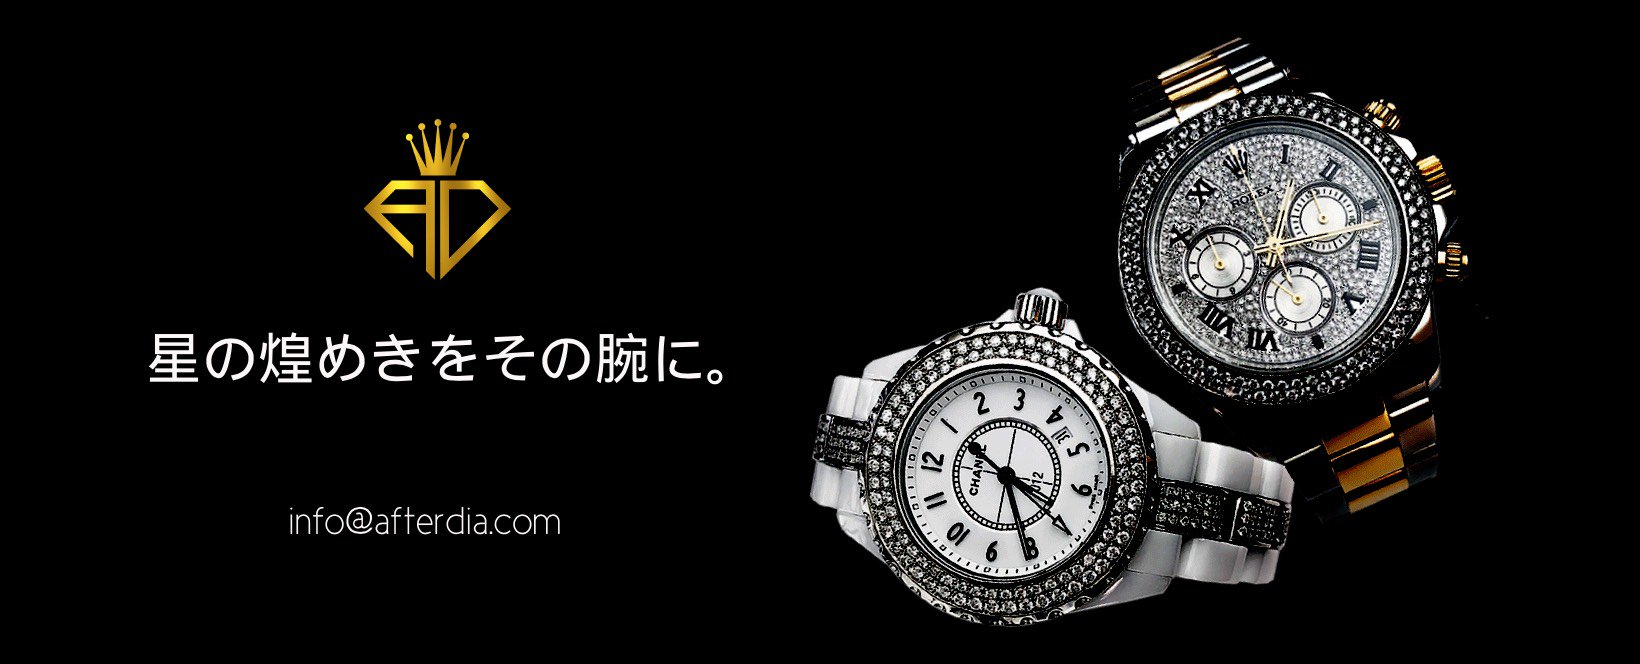 腕時計アフターダイヤの専門店「アフターダイヤ.com」